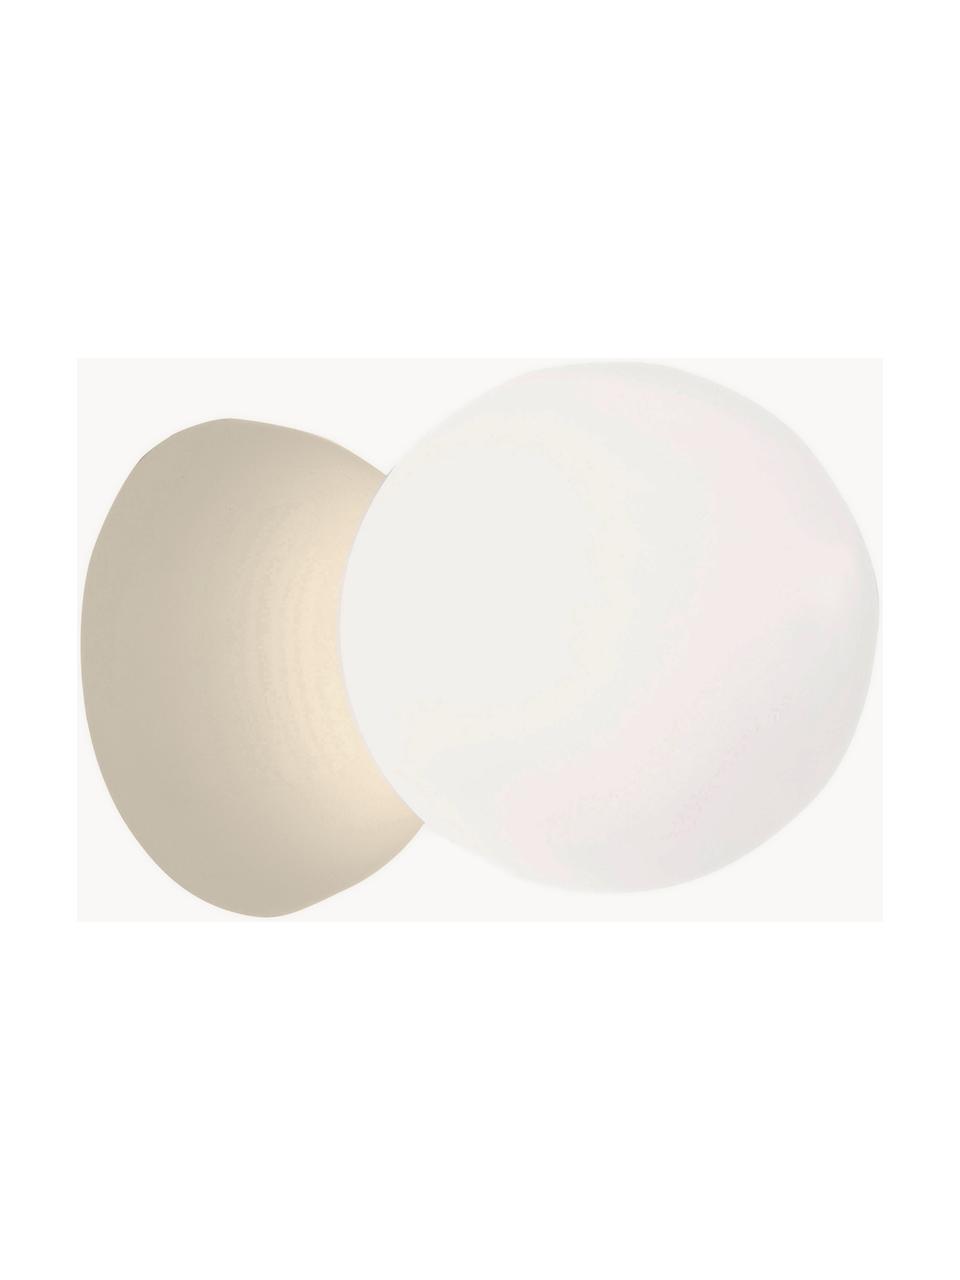 Aplique / Plafón pequeño de hormigón y vidrio Zero, Fijación: hormigón, Pantalla: vidrio opalino, Blanco, beige claro, Ø 10 x F 14 cm